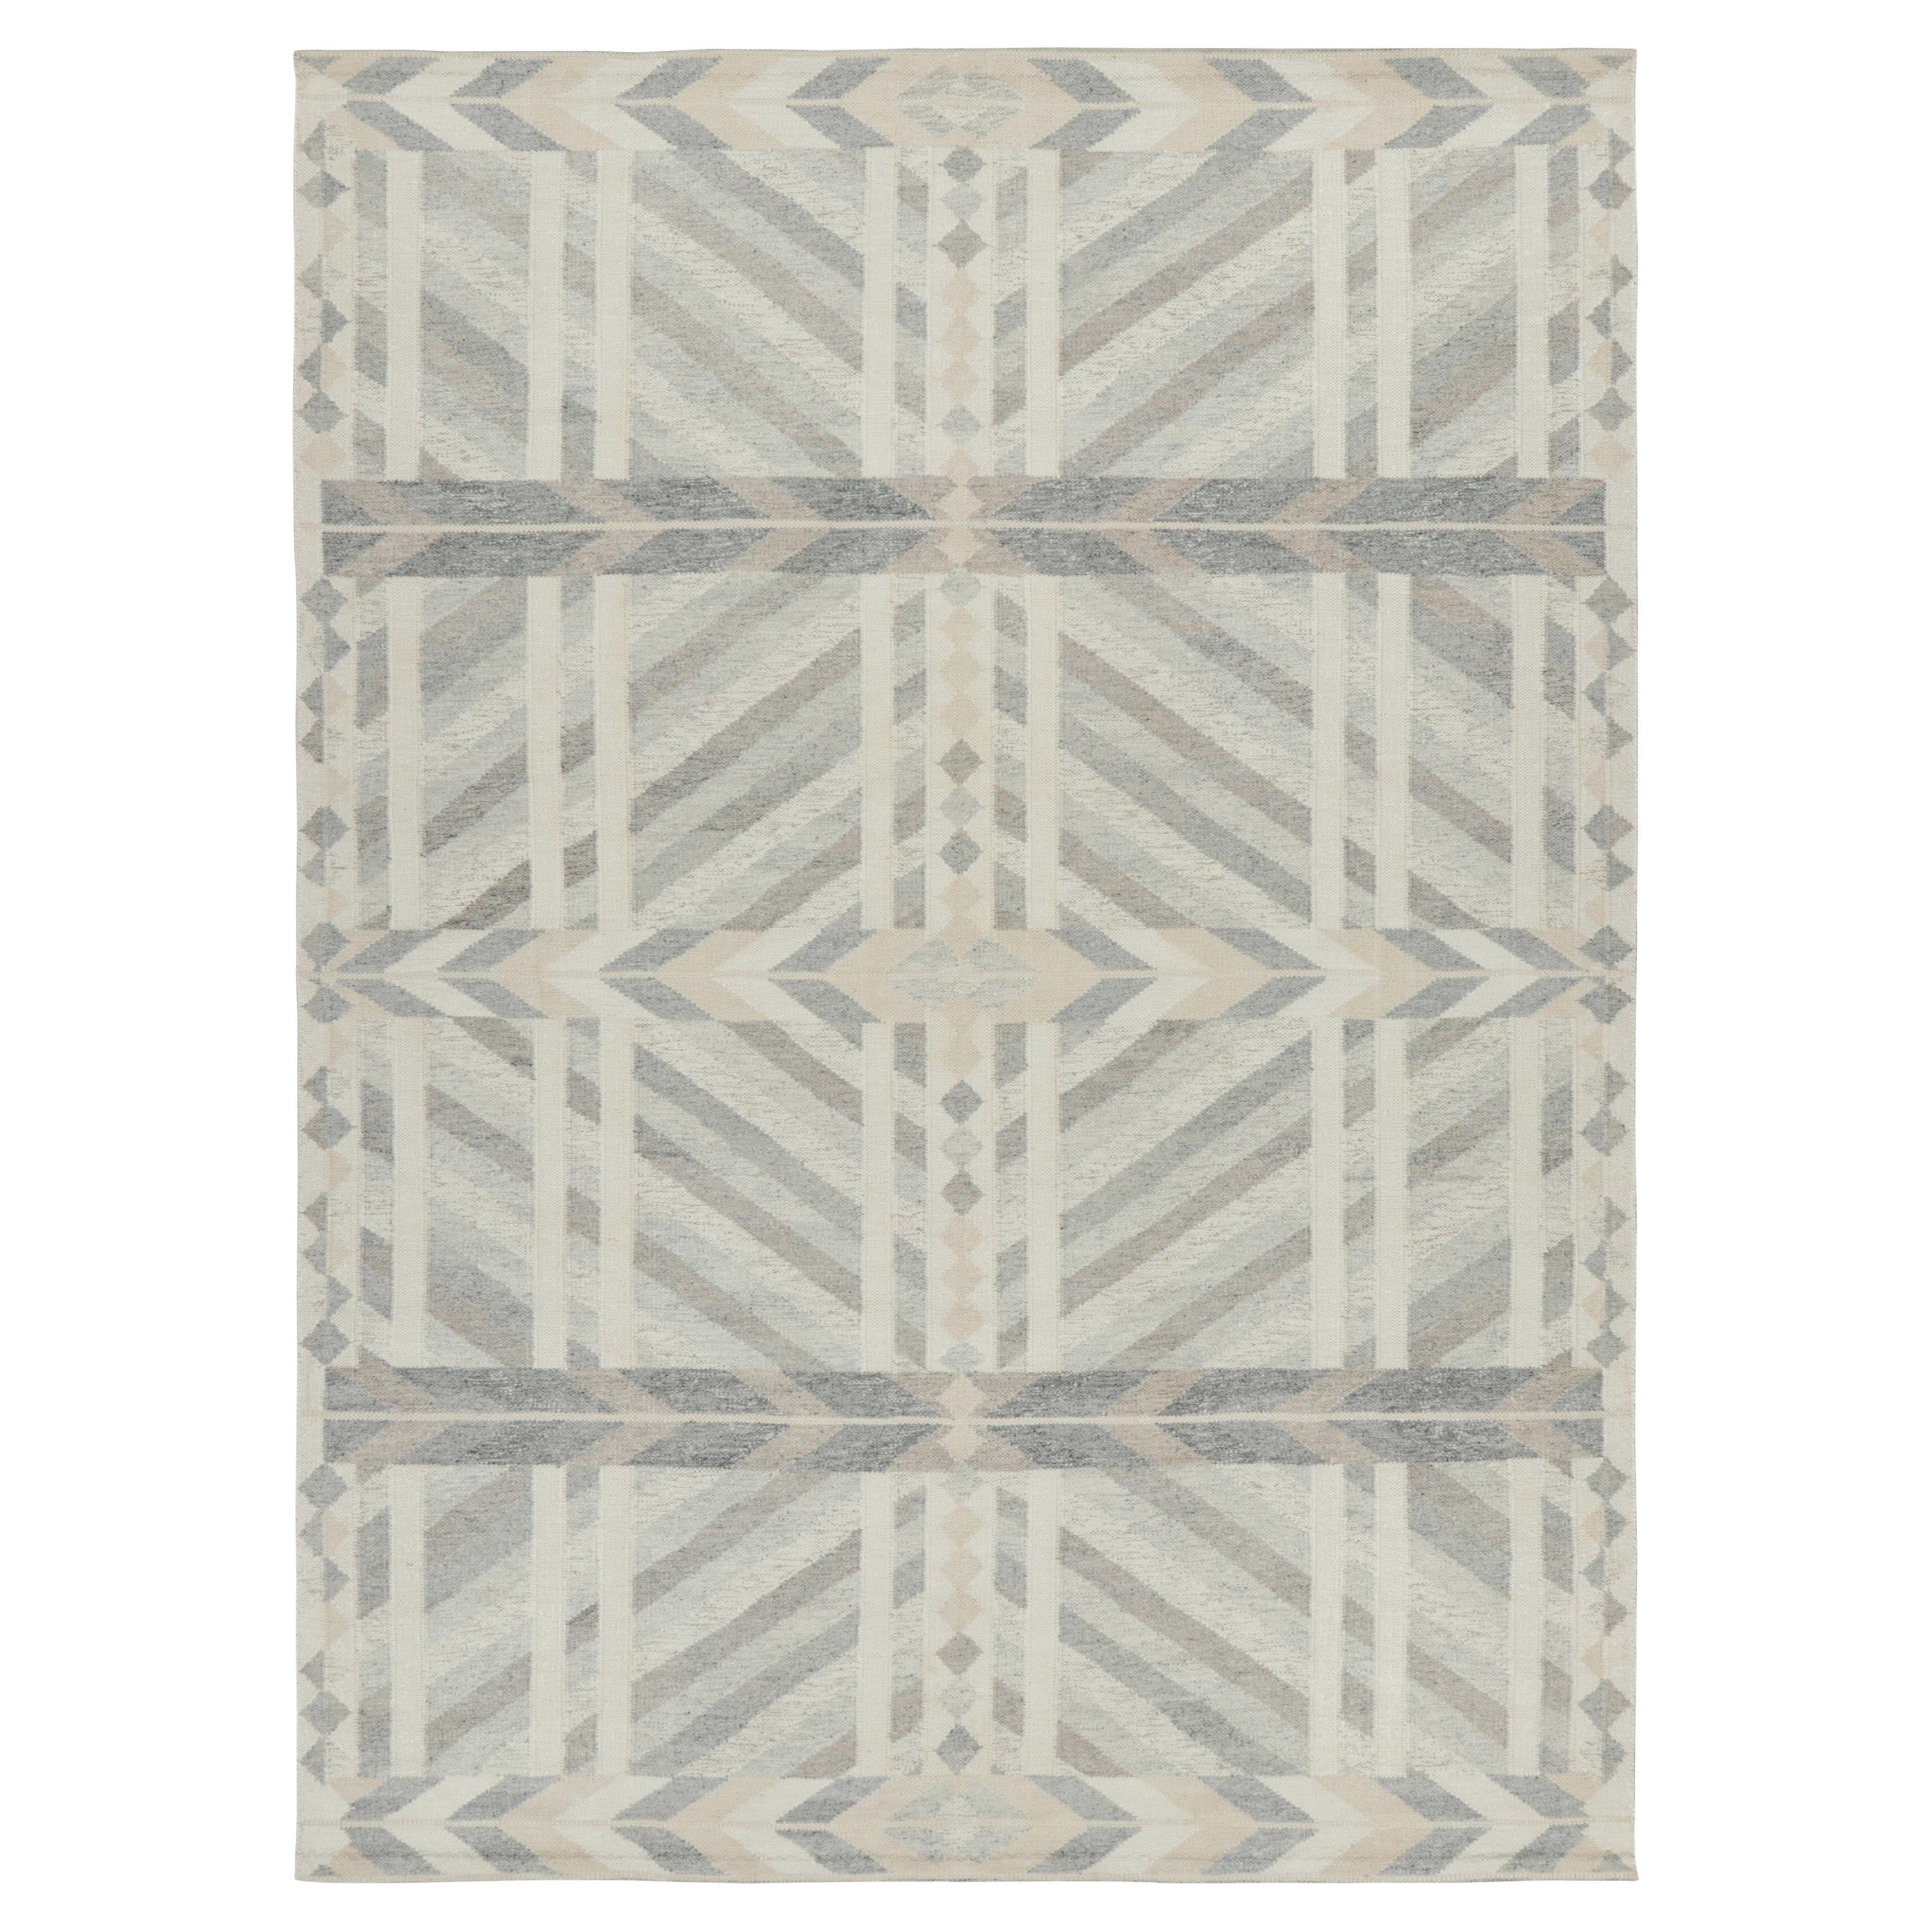 Rug & Kilim's Teppich im skandinavischen Stil in grau-beige und weiß-geometrischen Mustern